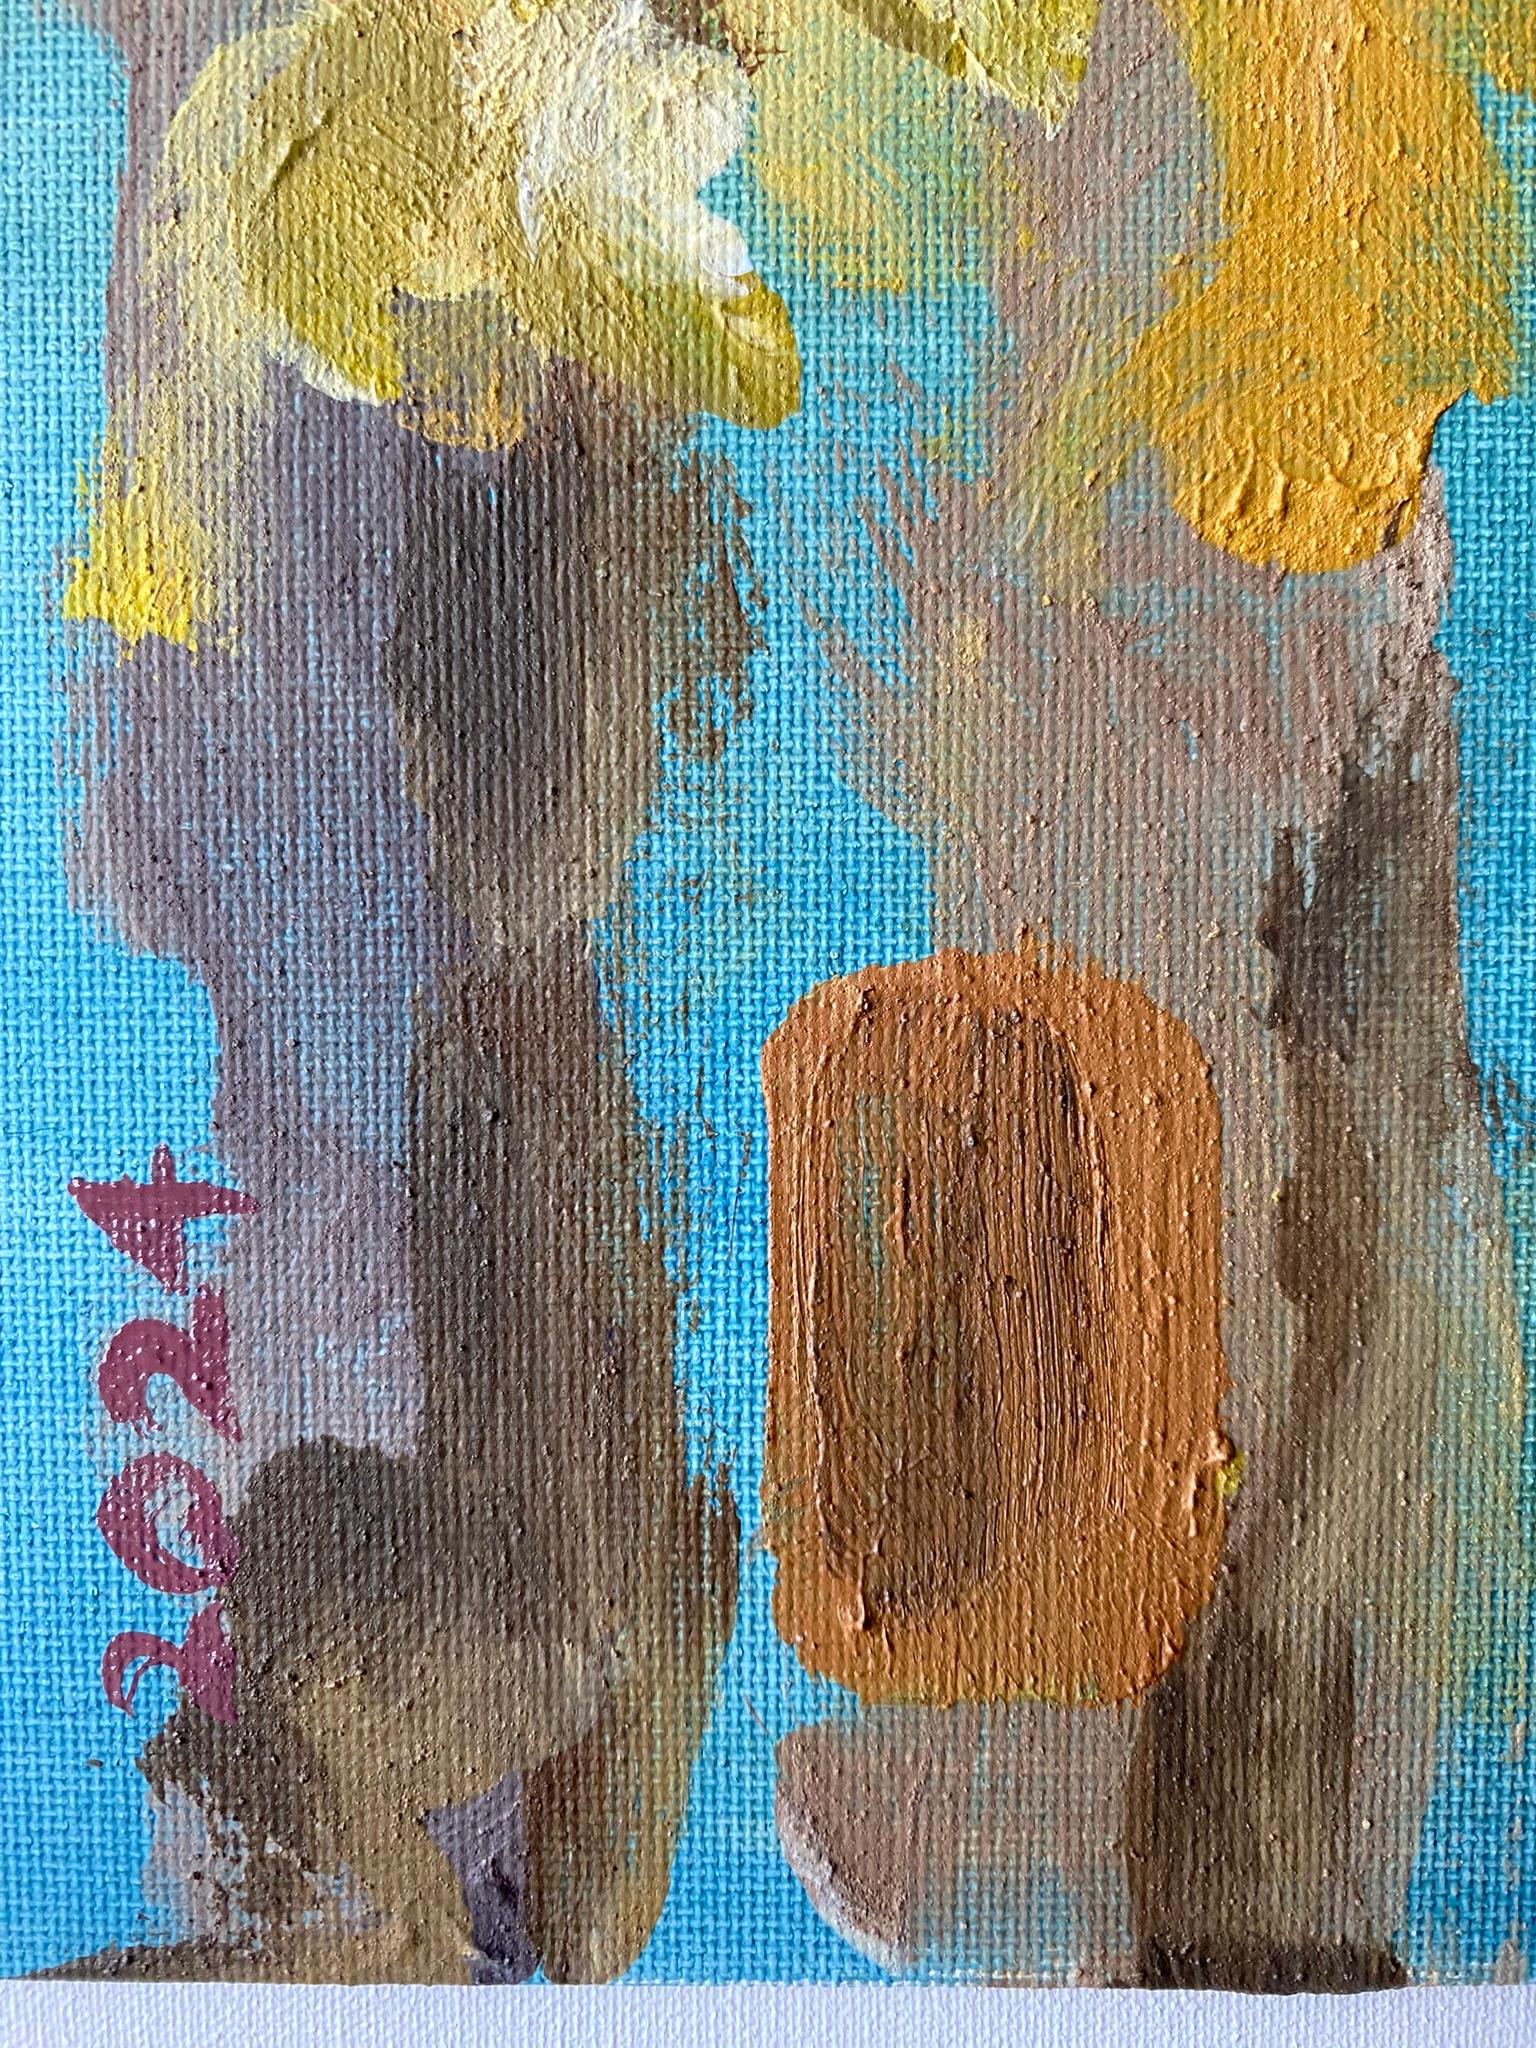 Original-Magnolias-Memory Landscape-UK Awarded Artist-oil on canvas board-Spring For Sale 9